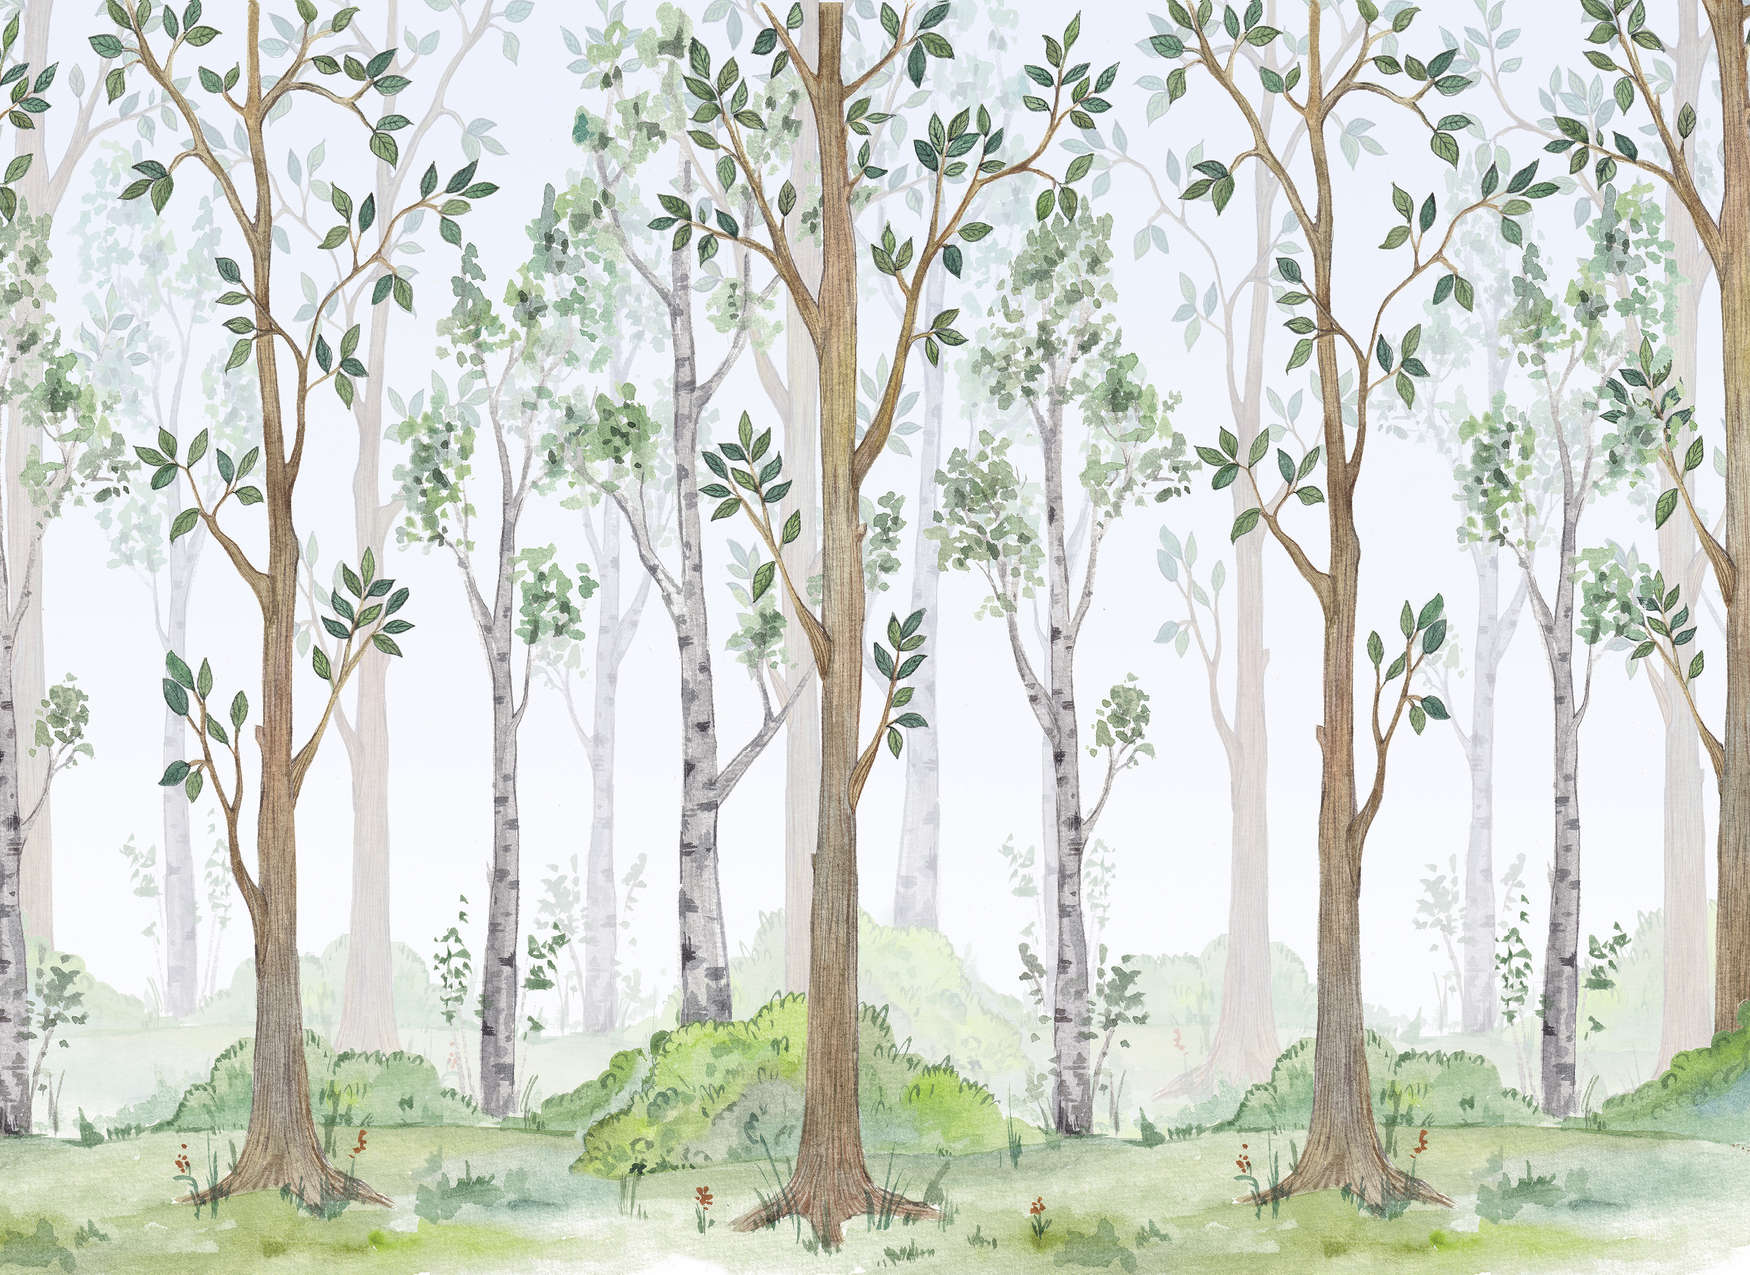             Carta da parati foresta dipinta per la camera dei bambini - Verde, marrone, bianco
        